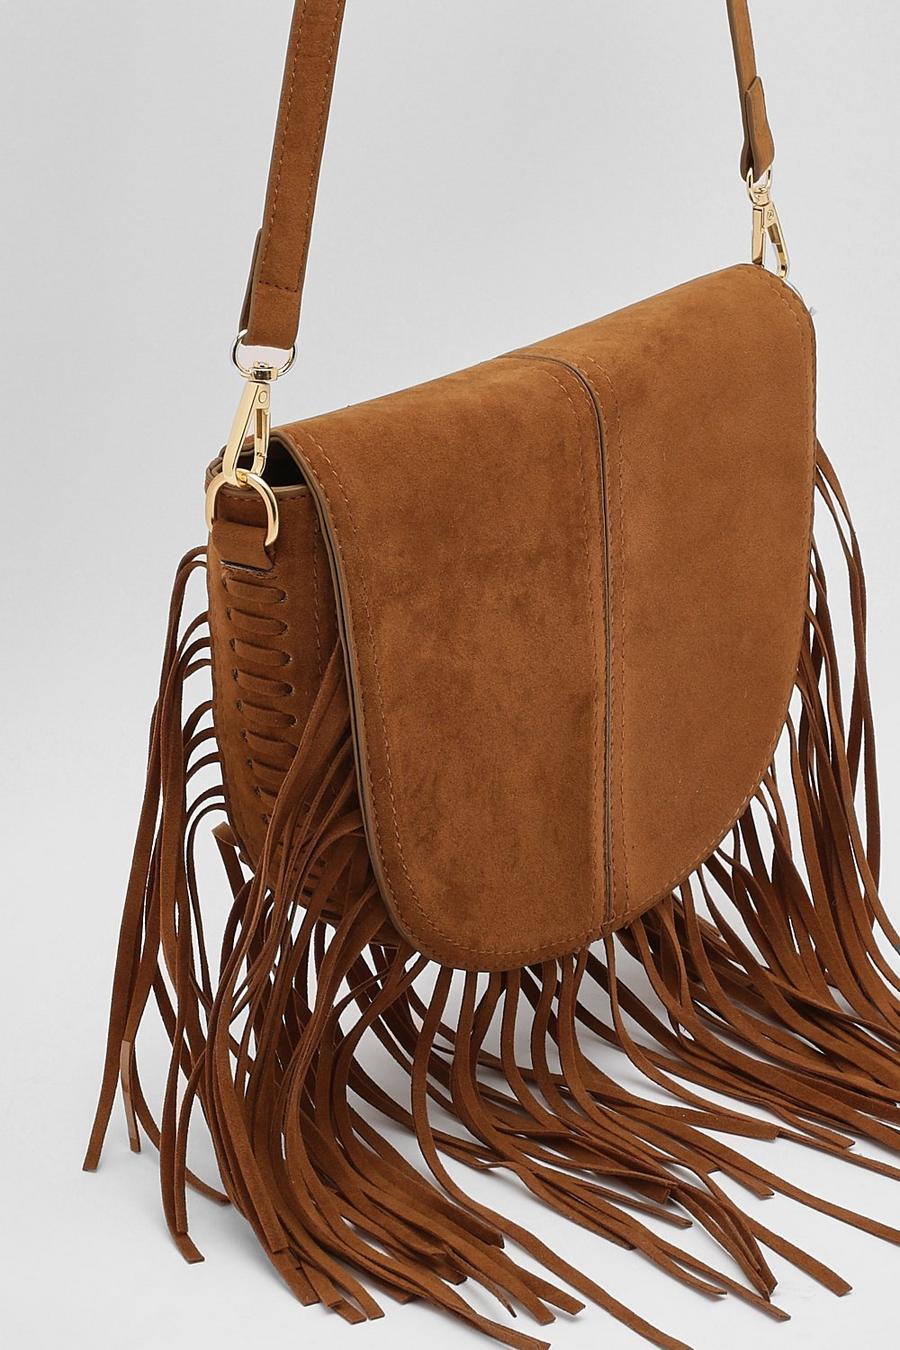 Tan brown Fringed Over The Shoulder Saddle Bag